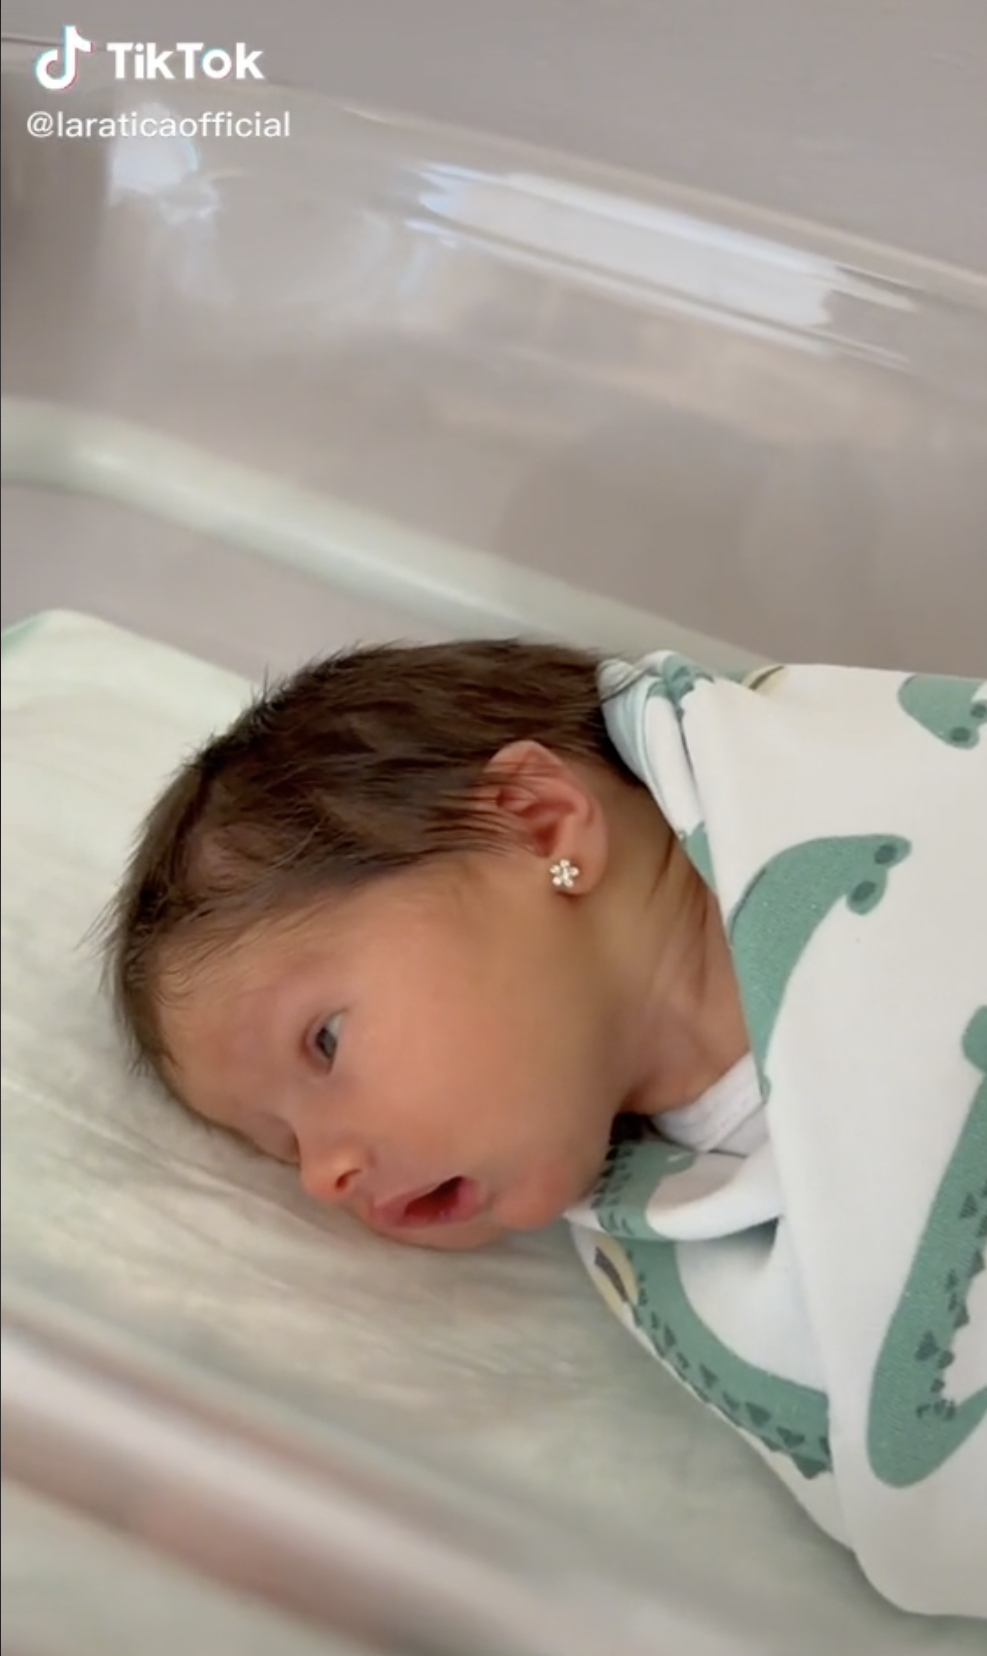 La petite fille, Lara, est à l'hôpital. | Source : https://www.tiktok.com/@laraticaofficial/video/7056685024967429382